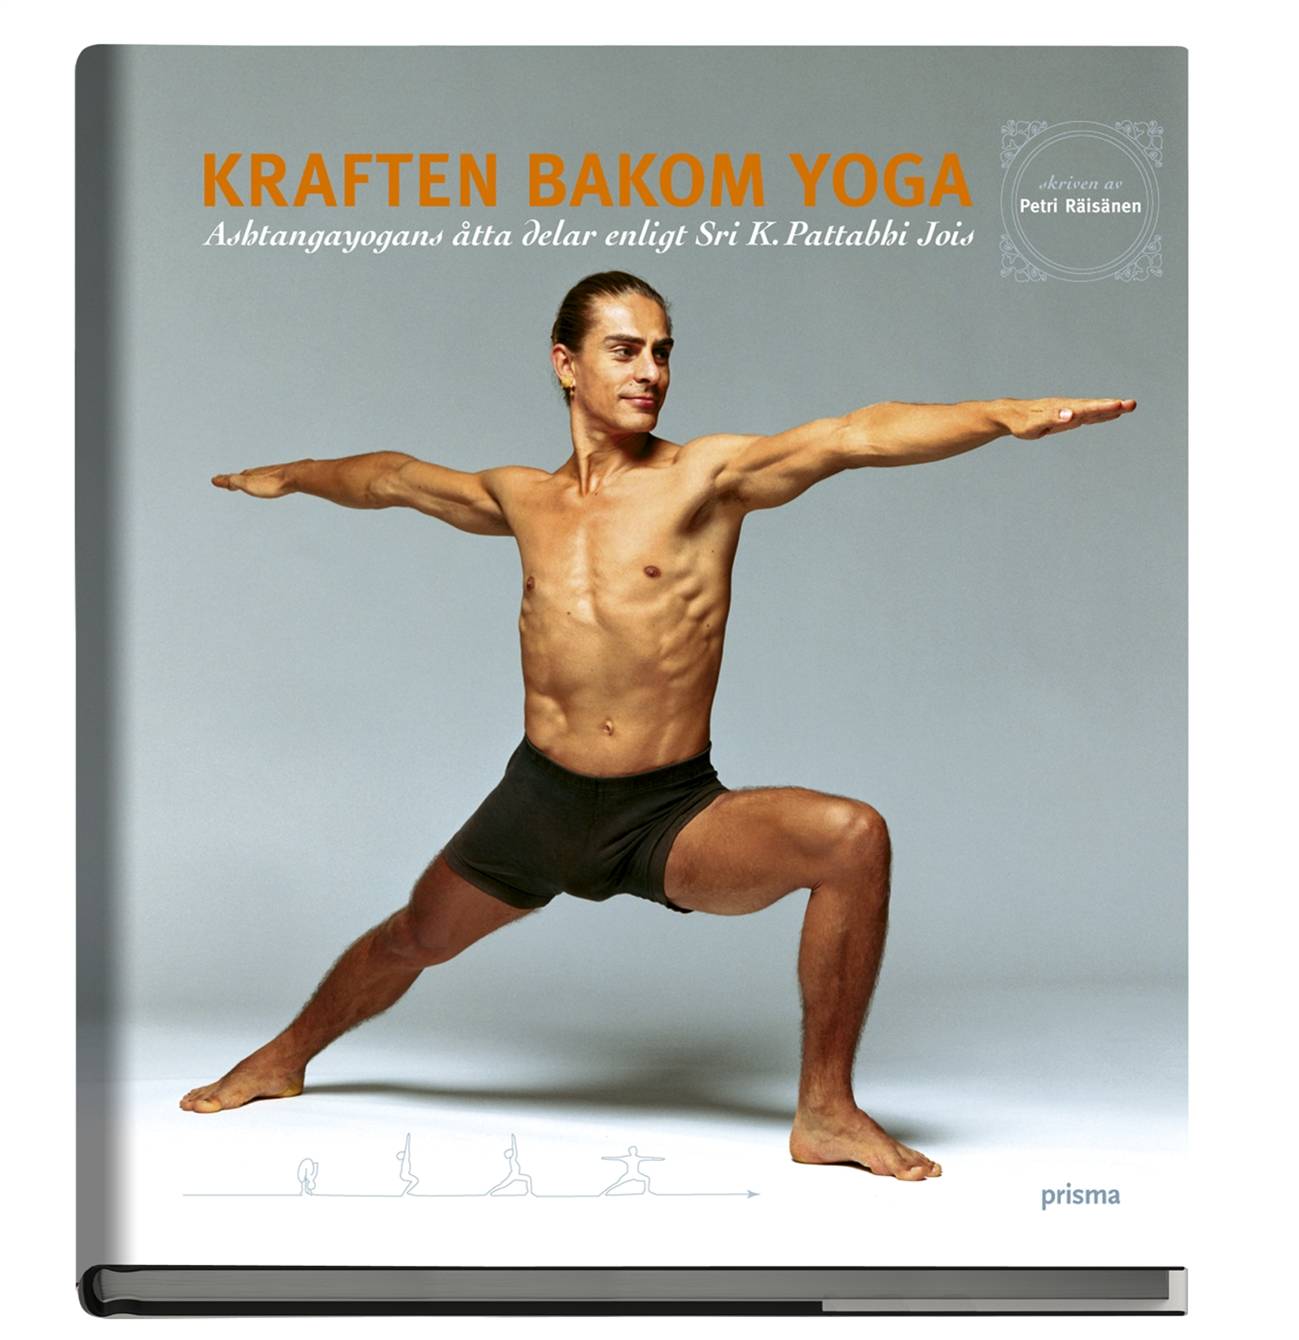 Kraften bakom yoga : Ashtangayogans åtta delar enligt Sri K. Pattabhi Jois